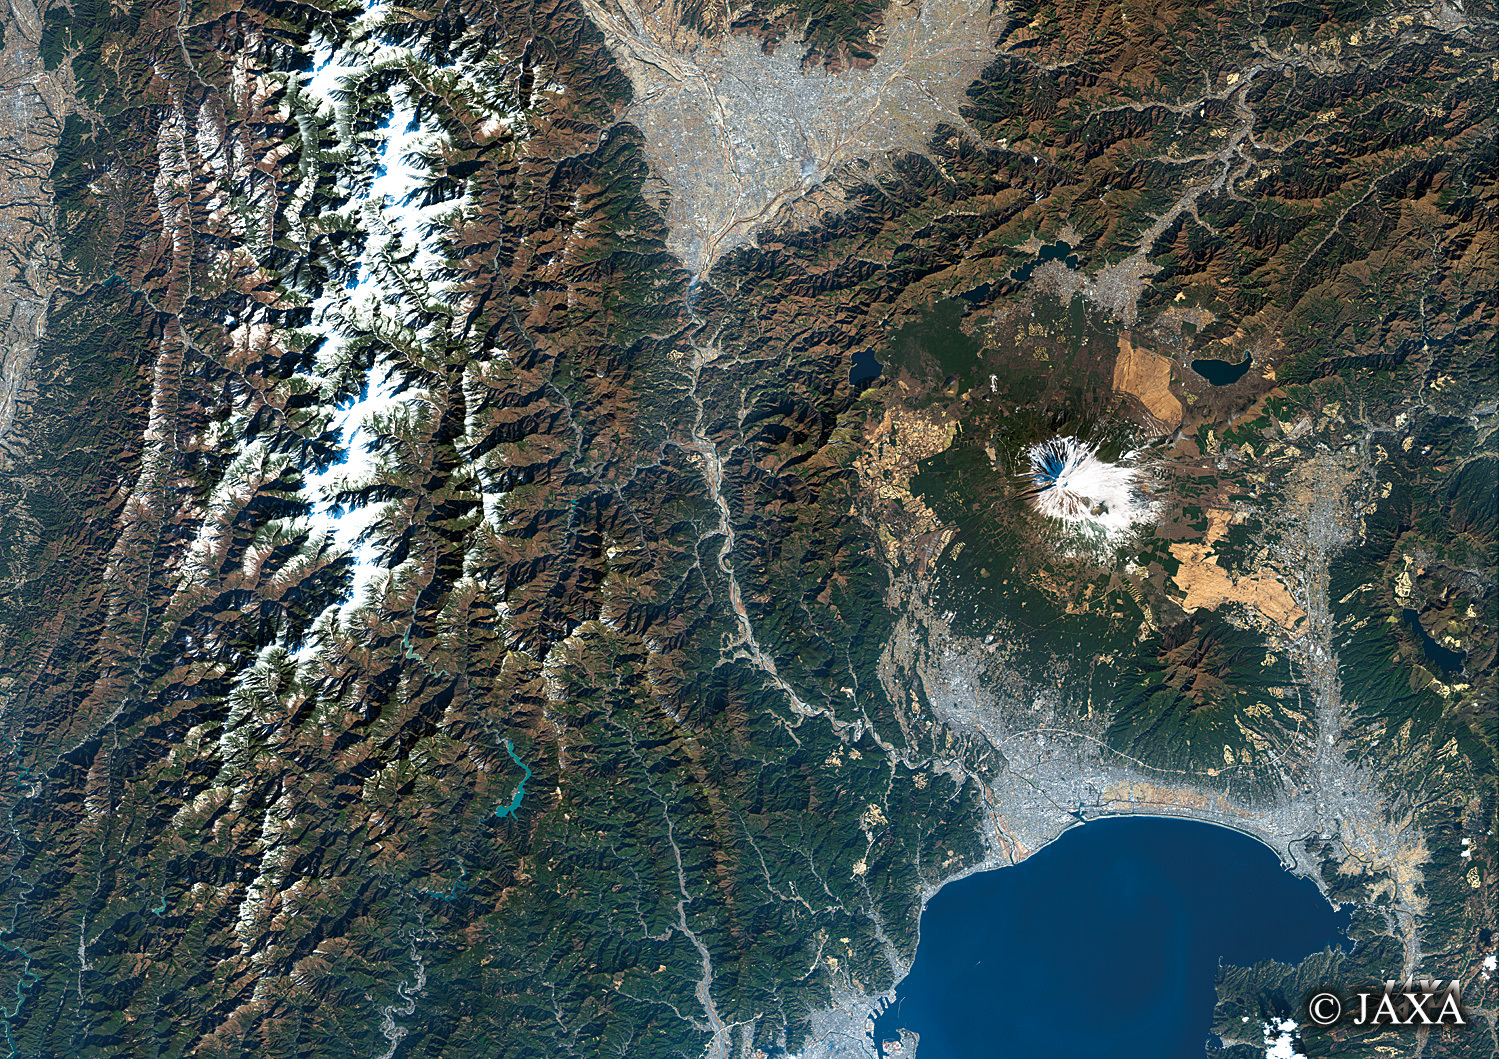 だいちから見た日本の都市 南アルプスと富士山周辺:衛星画像